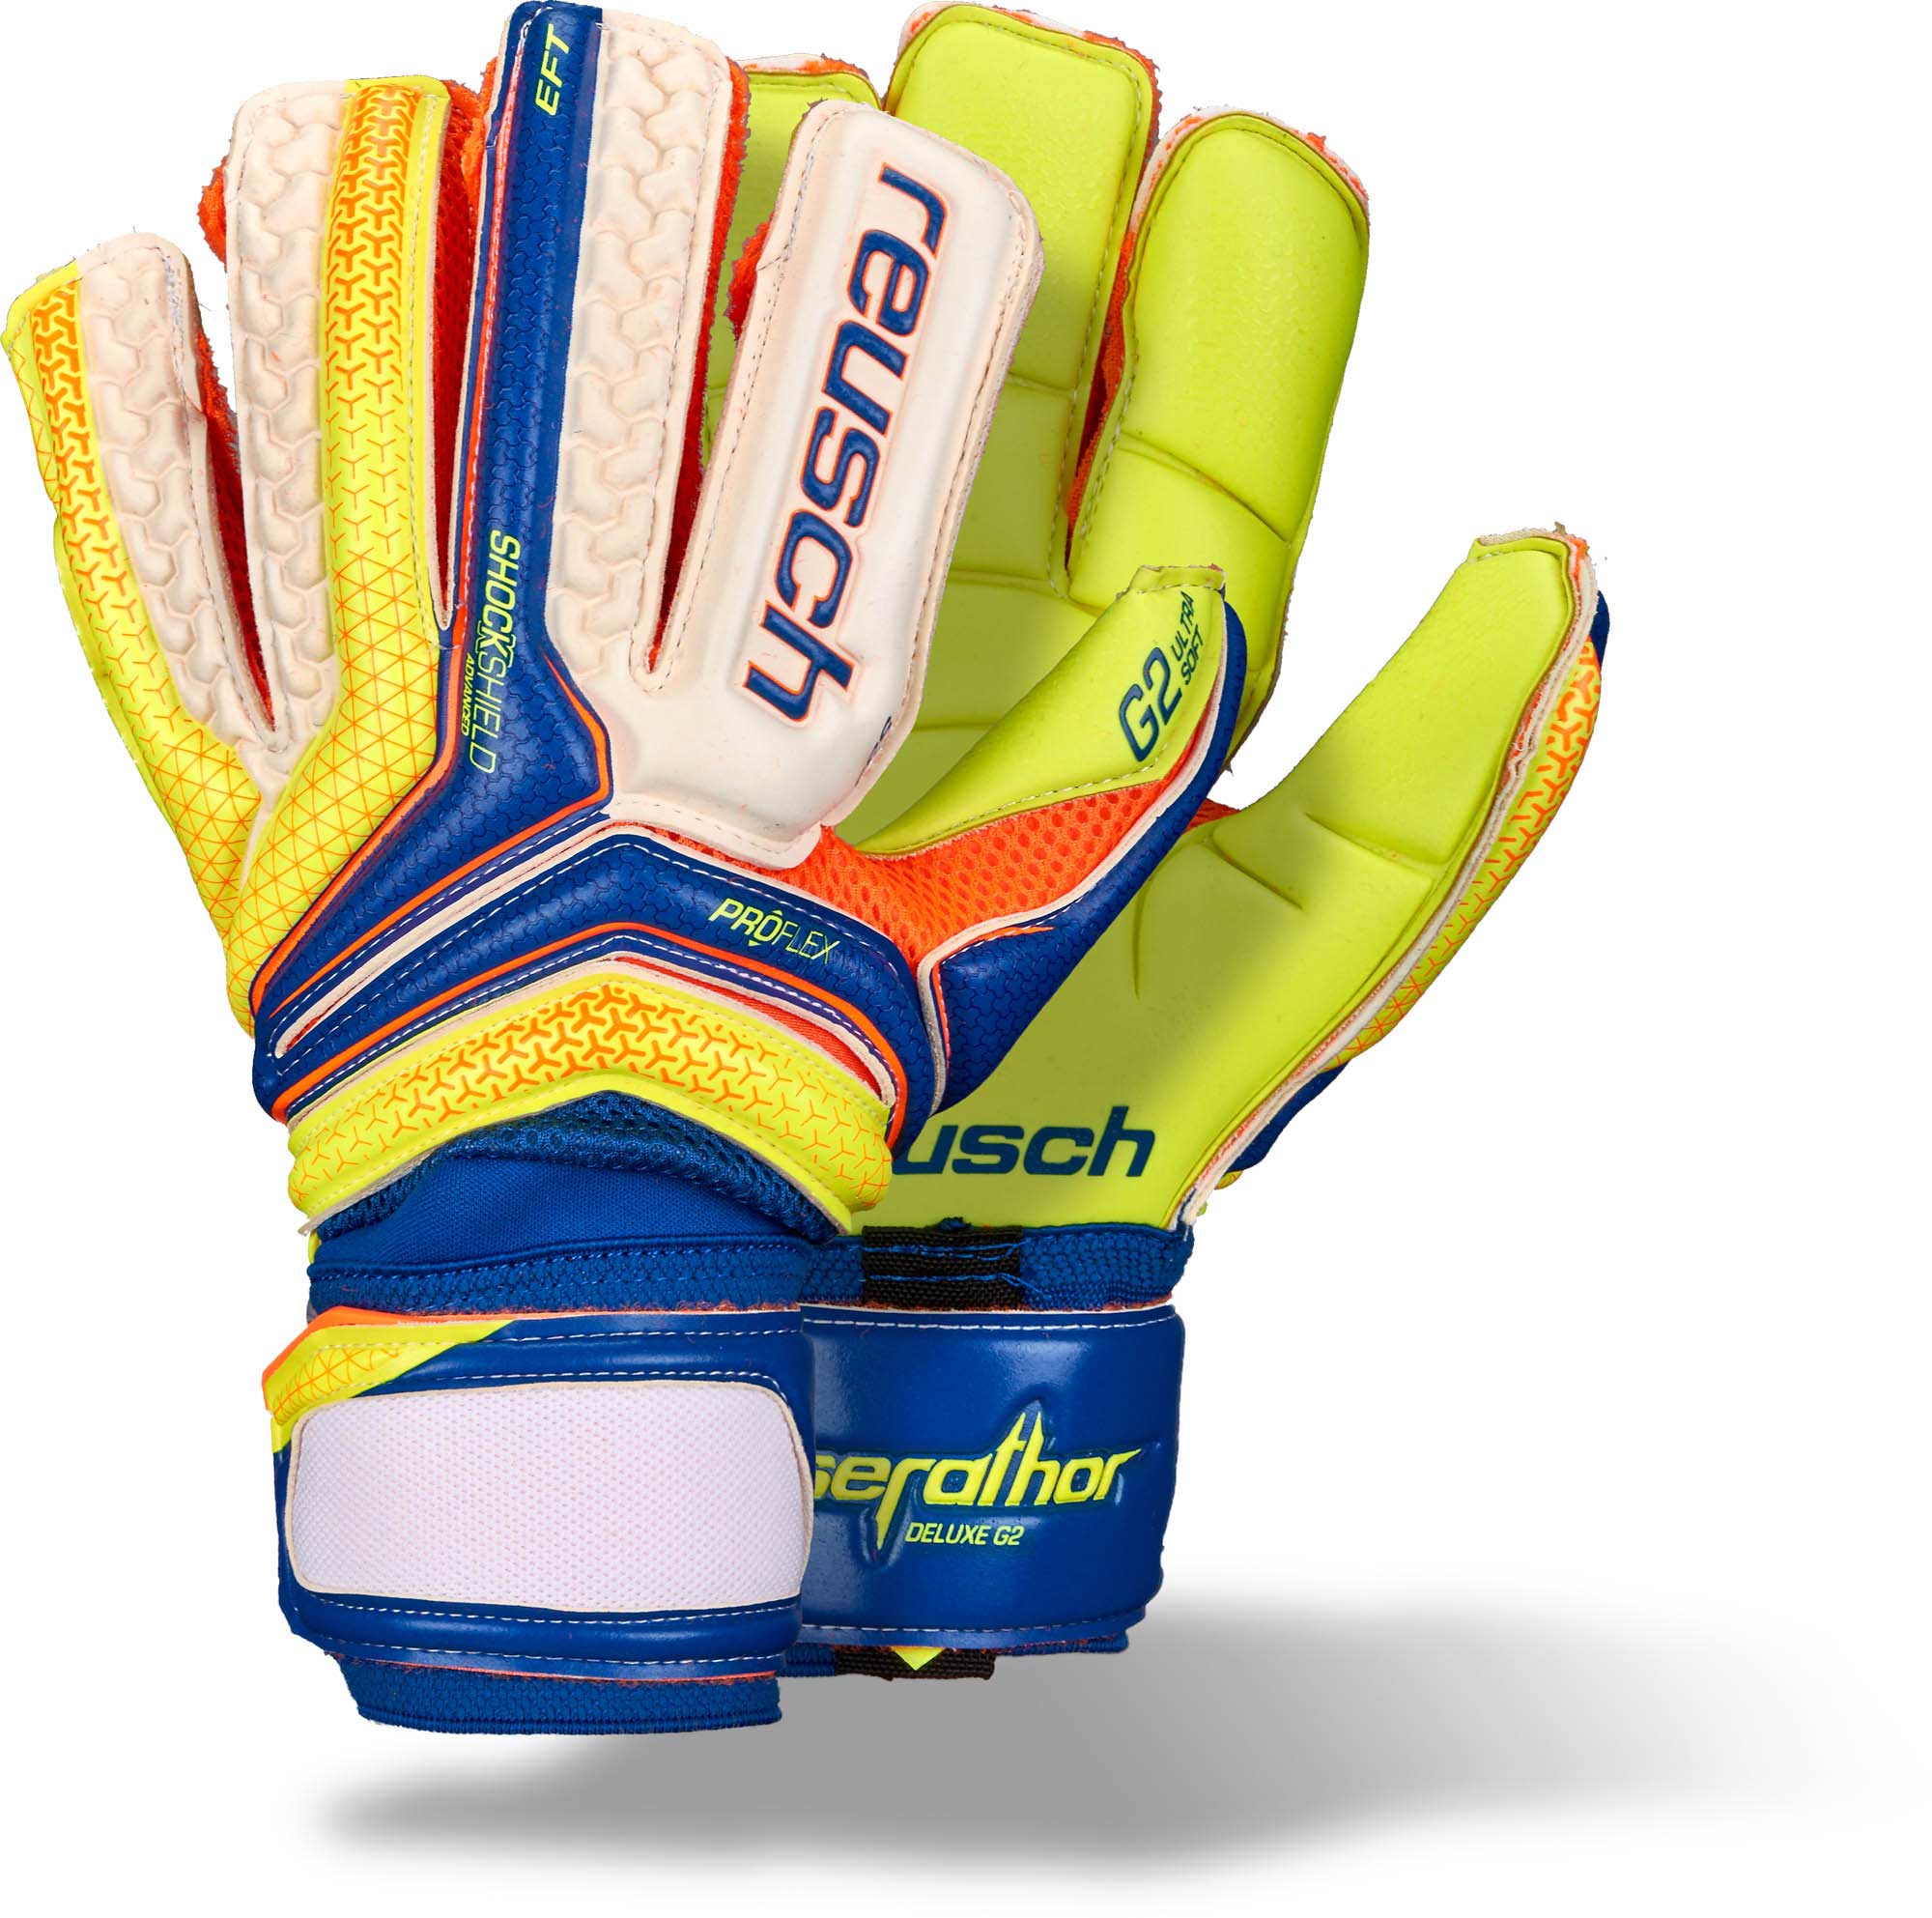 NEW Reusch Soccer Goalie Gloves Serathor Pro G2 SZ 9 SAMPLES 3770955 